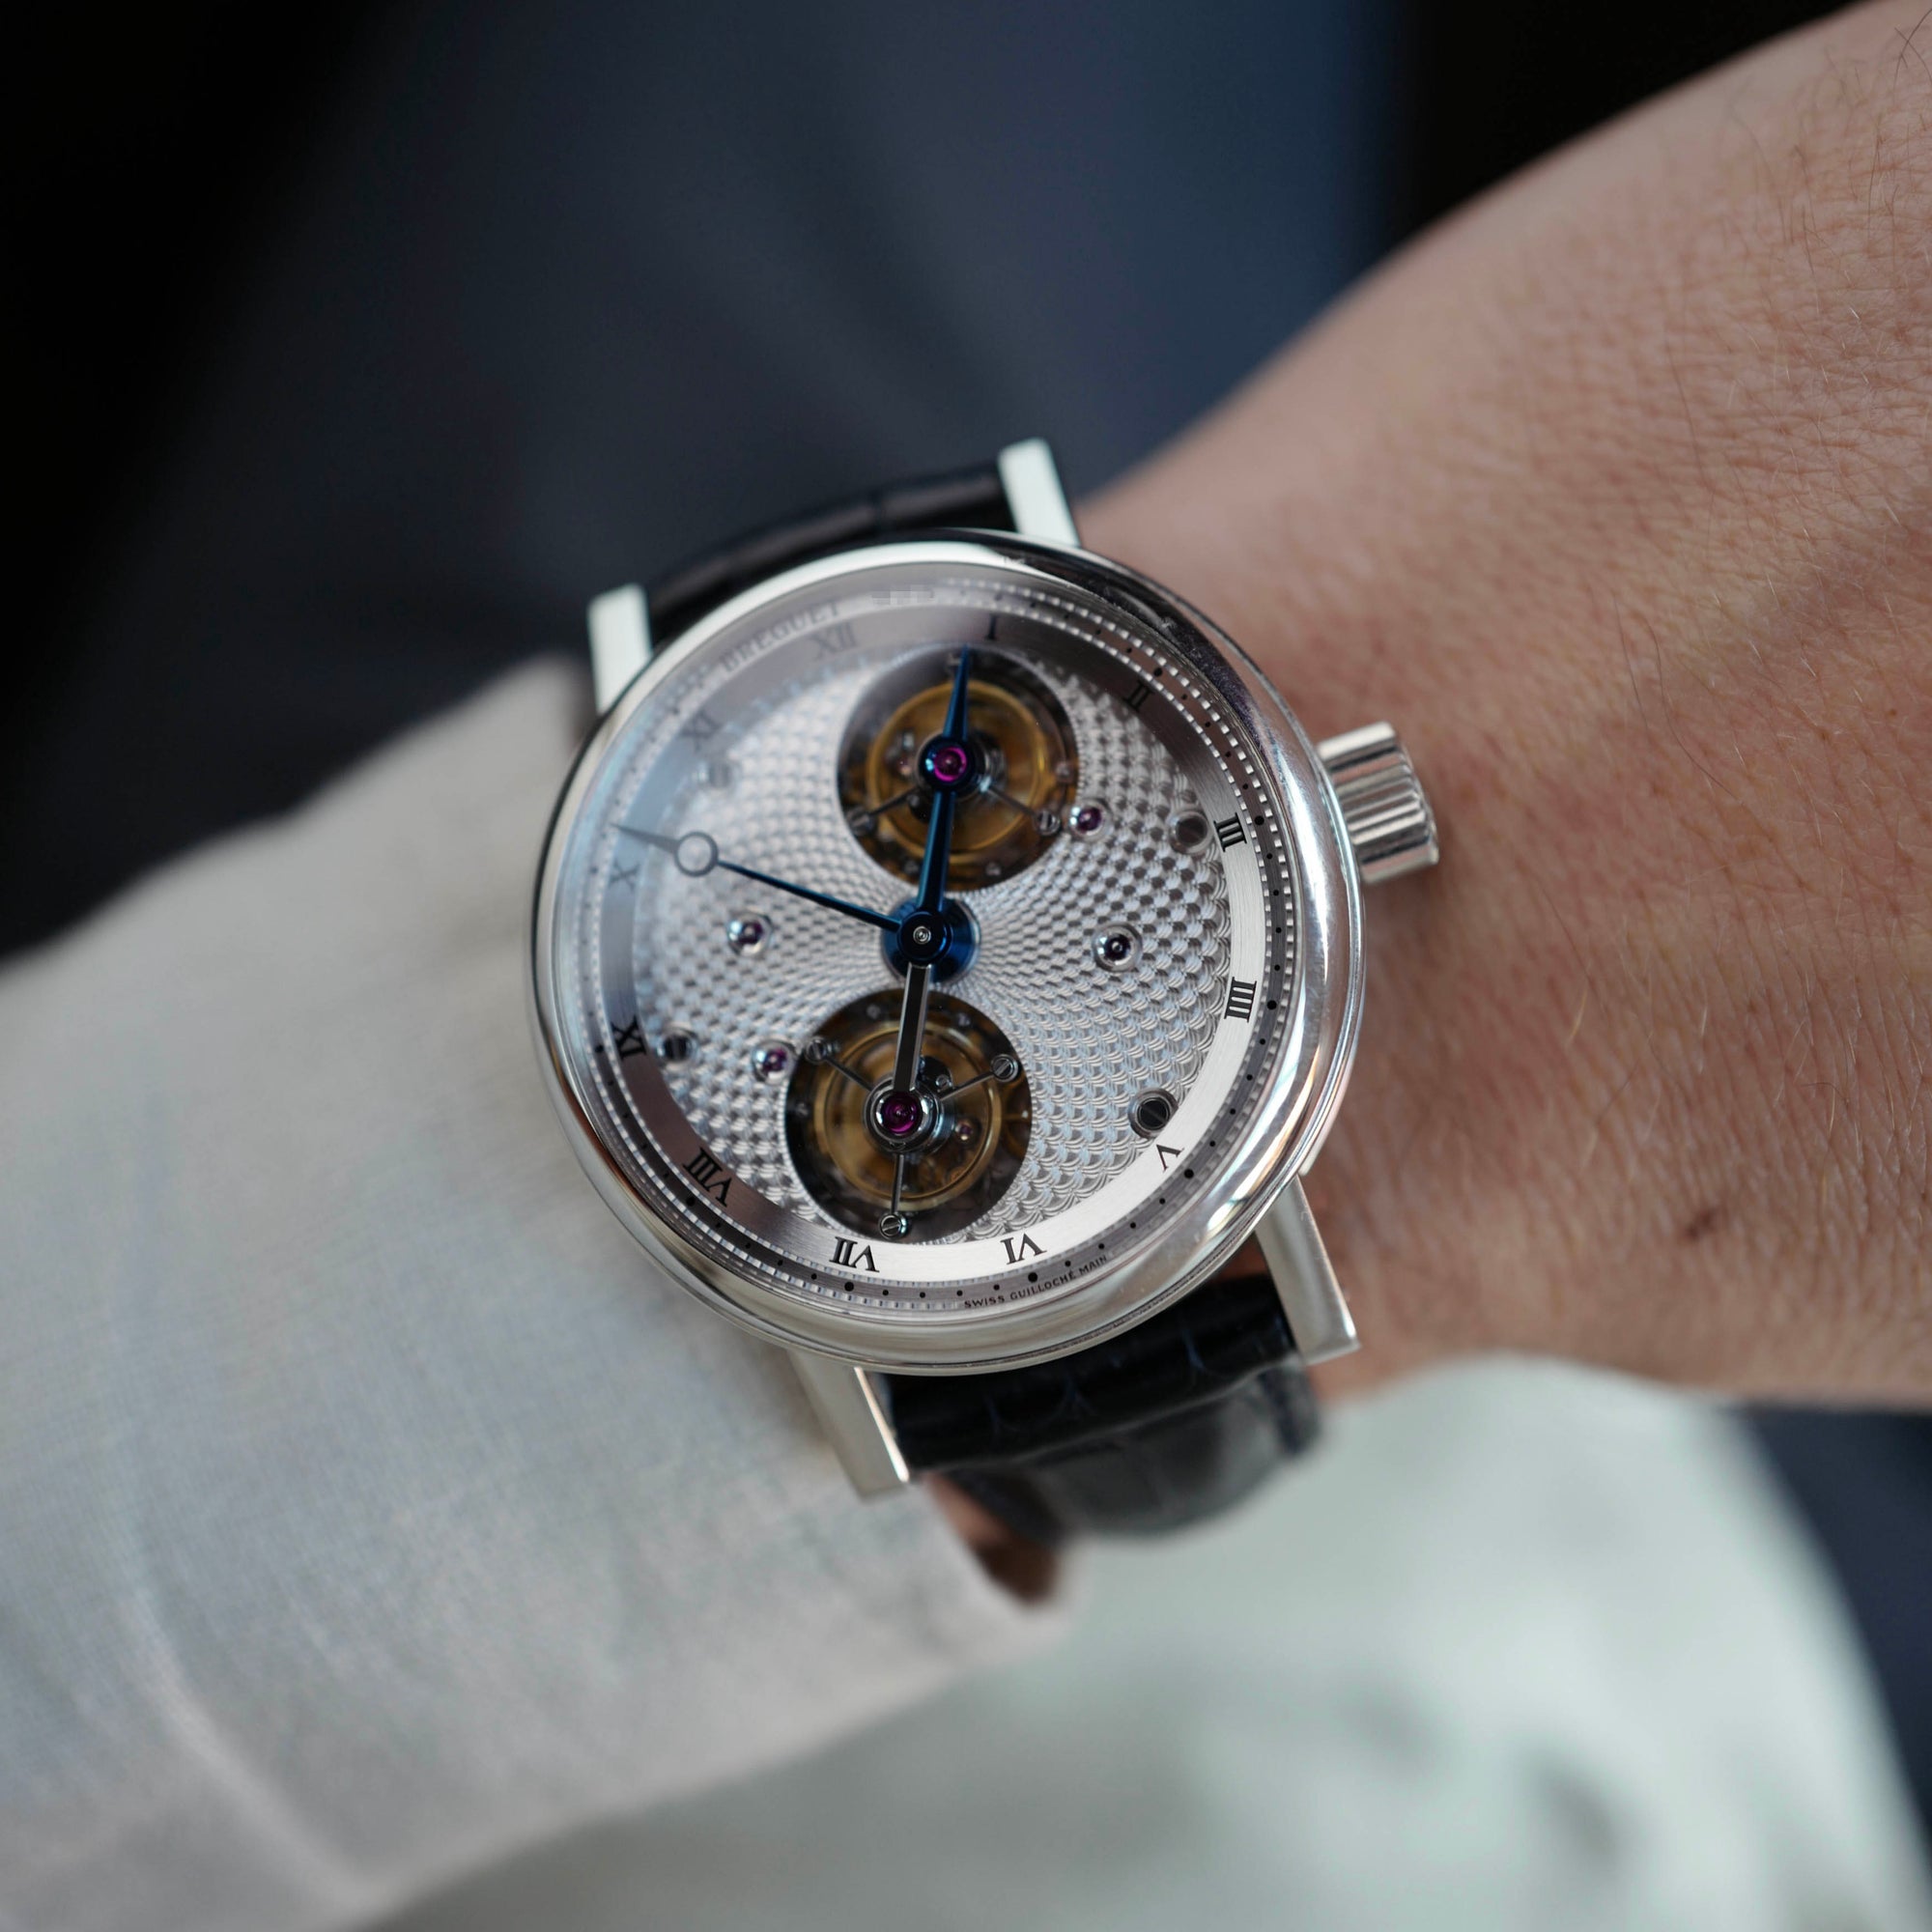 Breguet - Breguet Platinum Double Tourbillon Watch Ref. 5347PT - The Keystone Watches